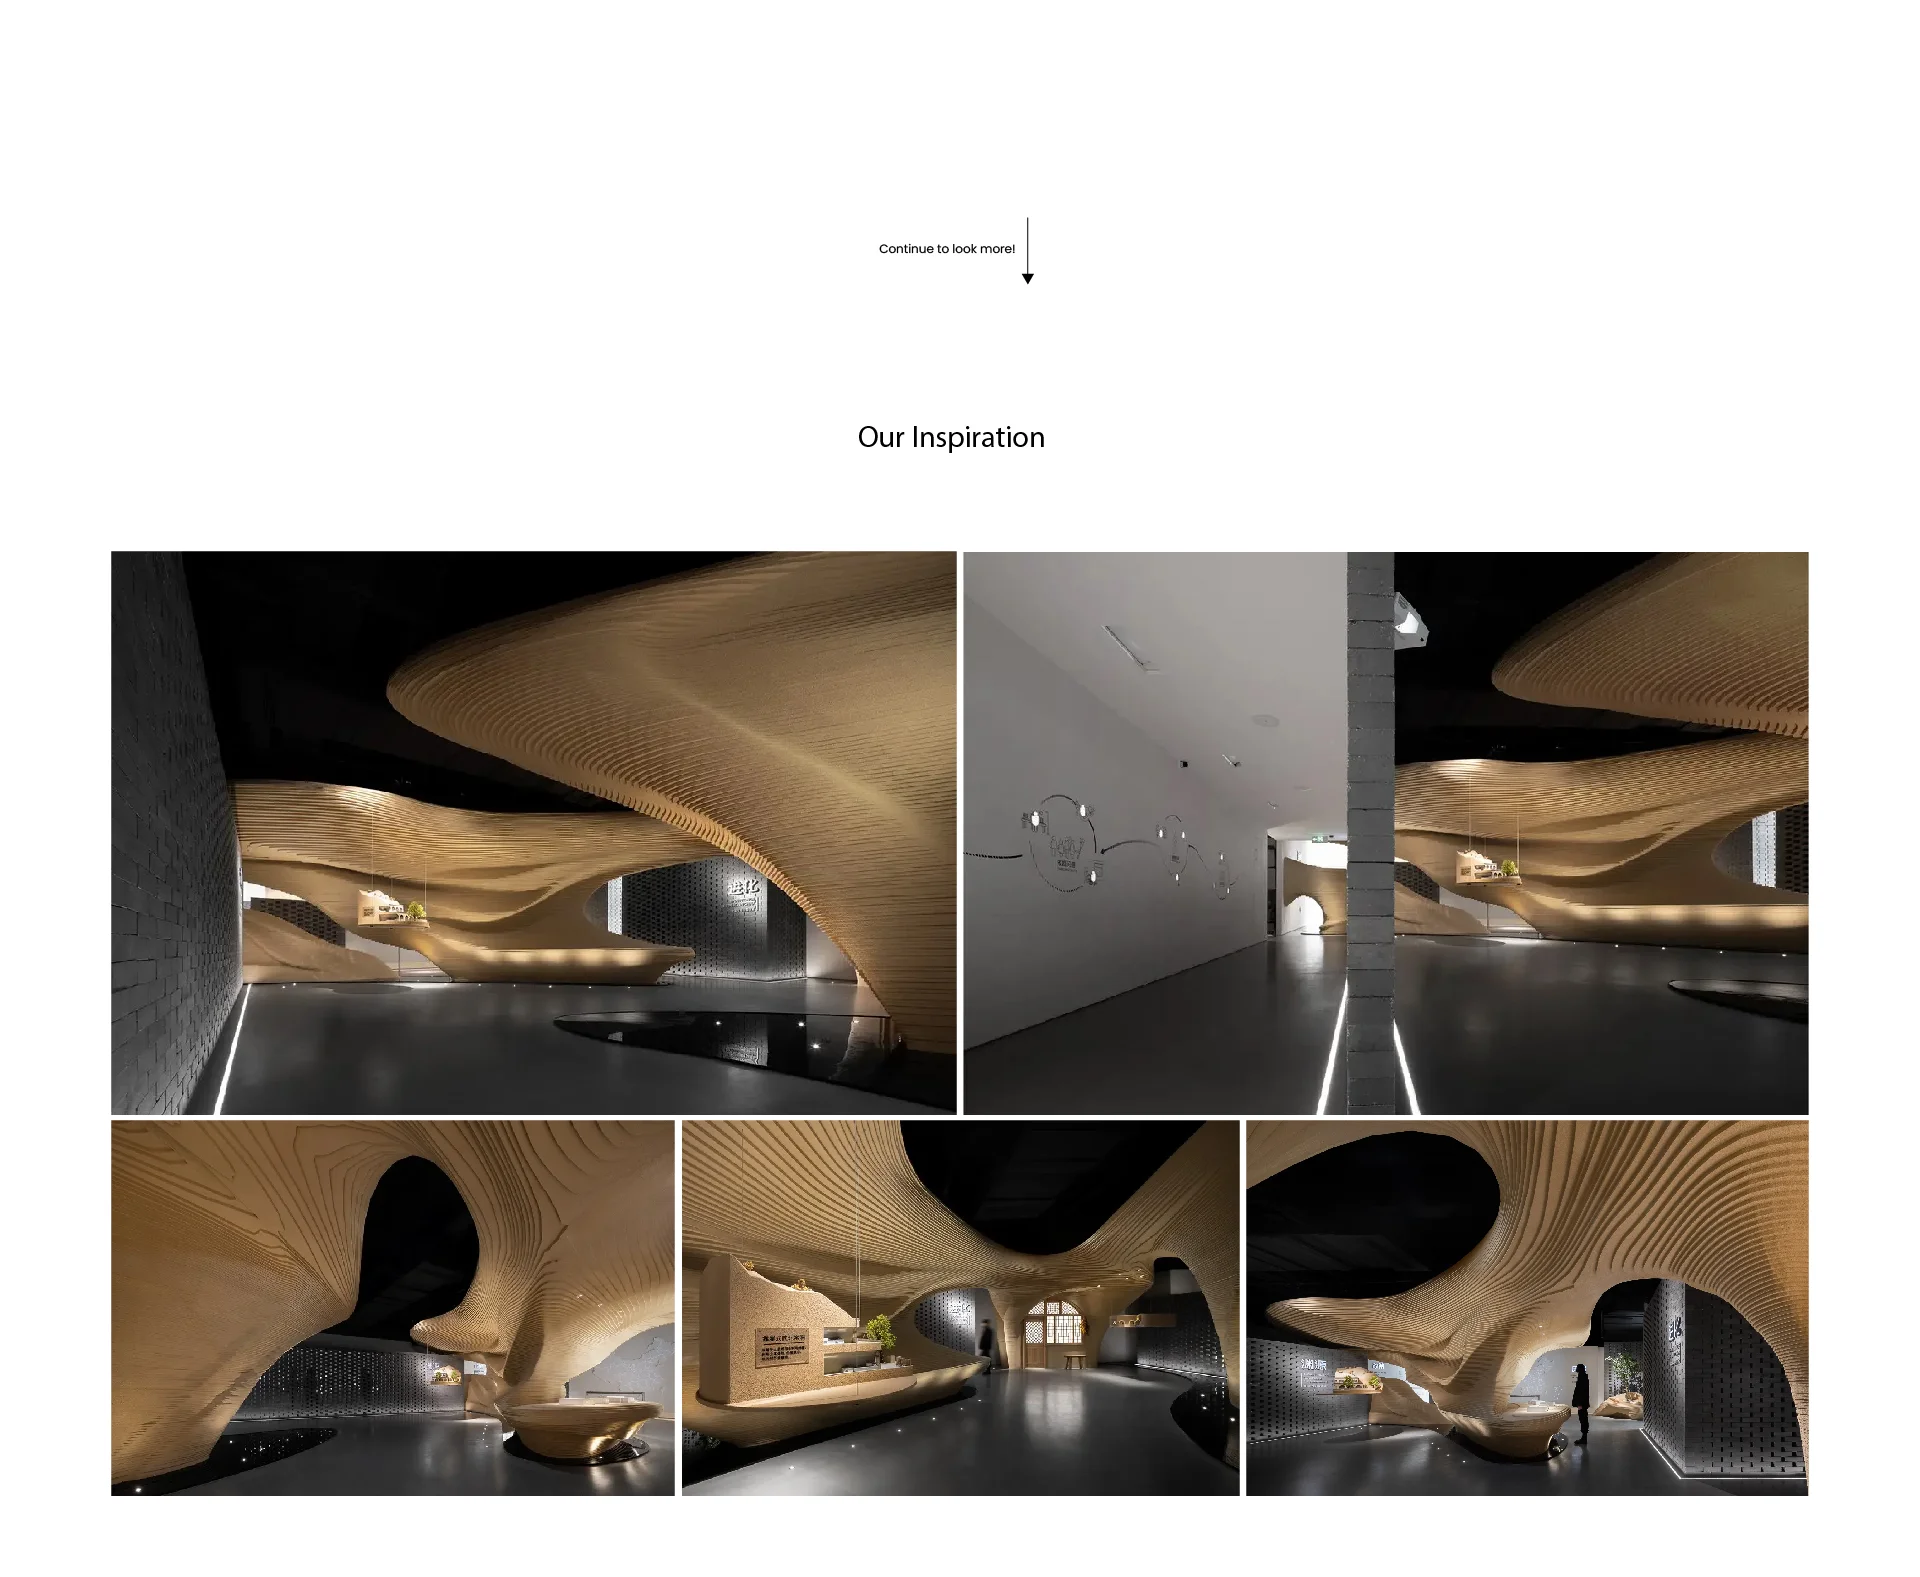   طراحی غرفه و غرفه سازی نمایشگاهی نفیس نخ نمایشگاه ماشین آلات نساجی تهران 1402-02 